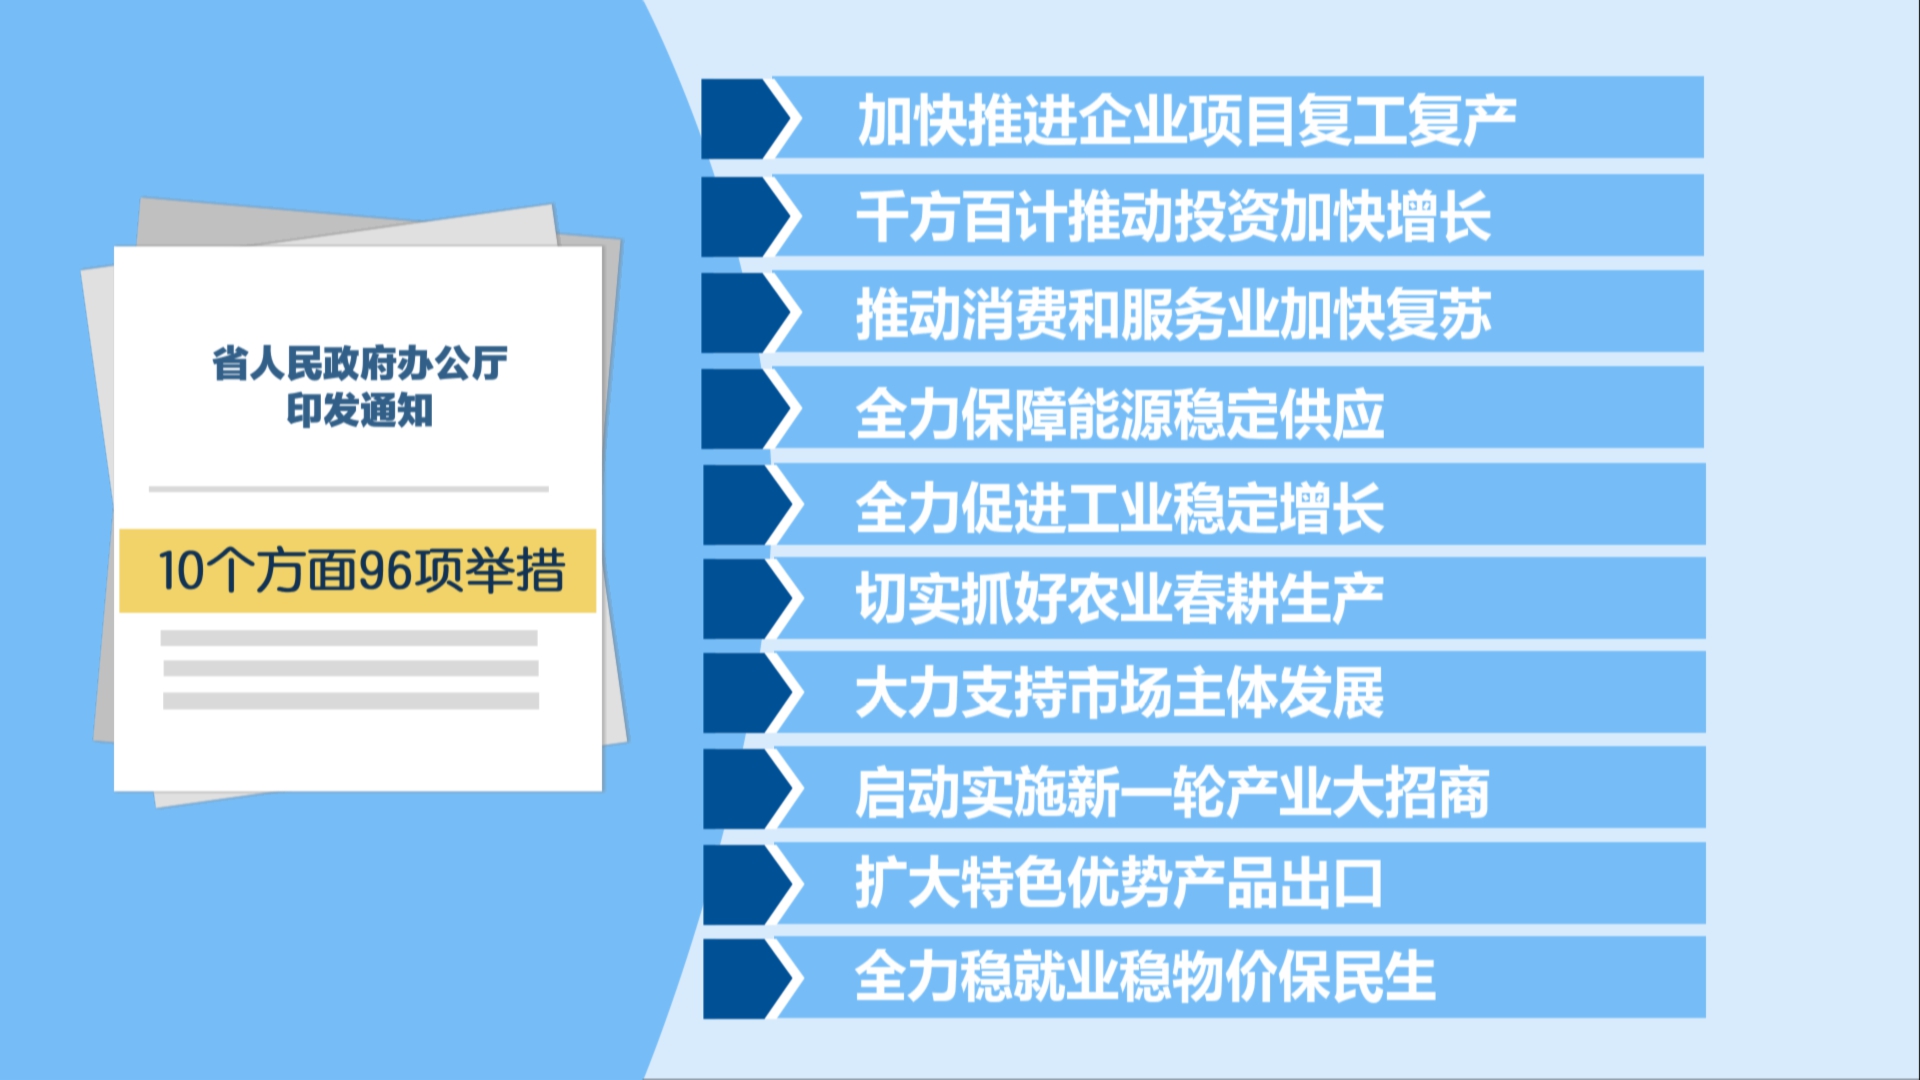 贵州新闻联播丨贵州出台10个方面96项举措确保一季度经济开好局起好步